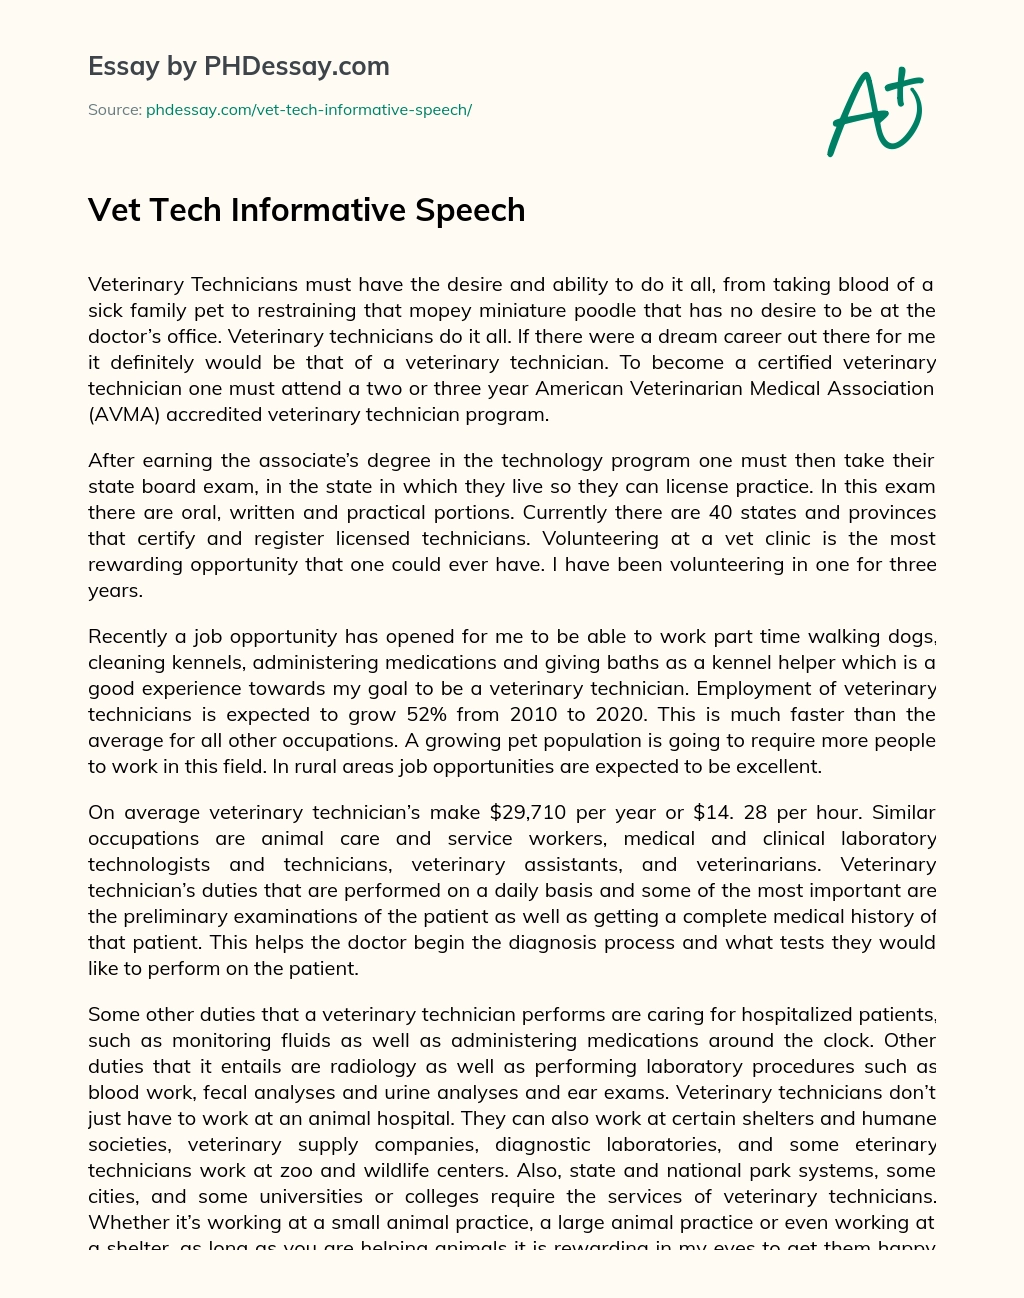 Vet Tech Informative Speech essay